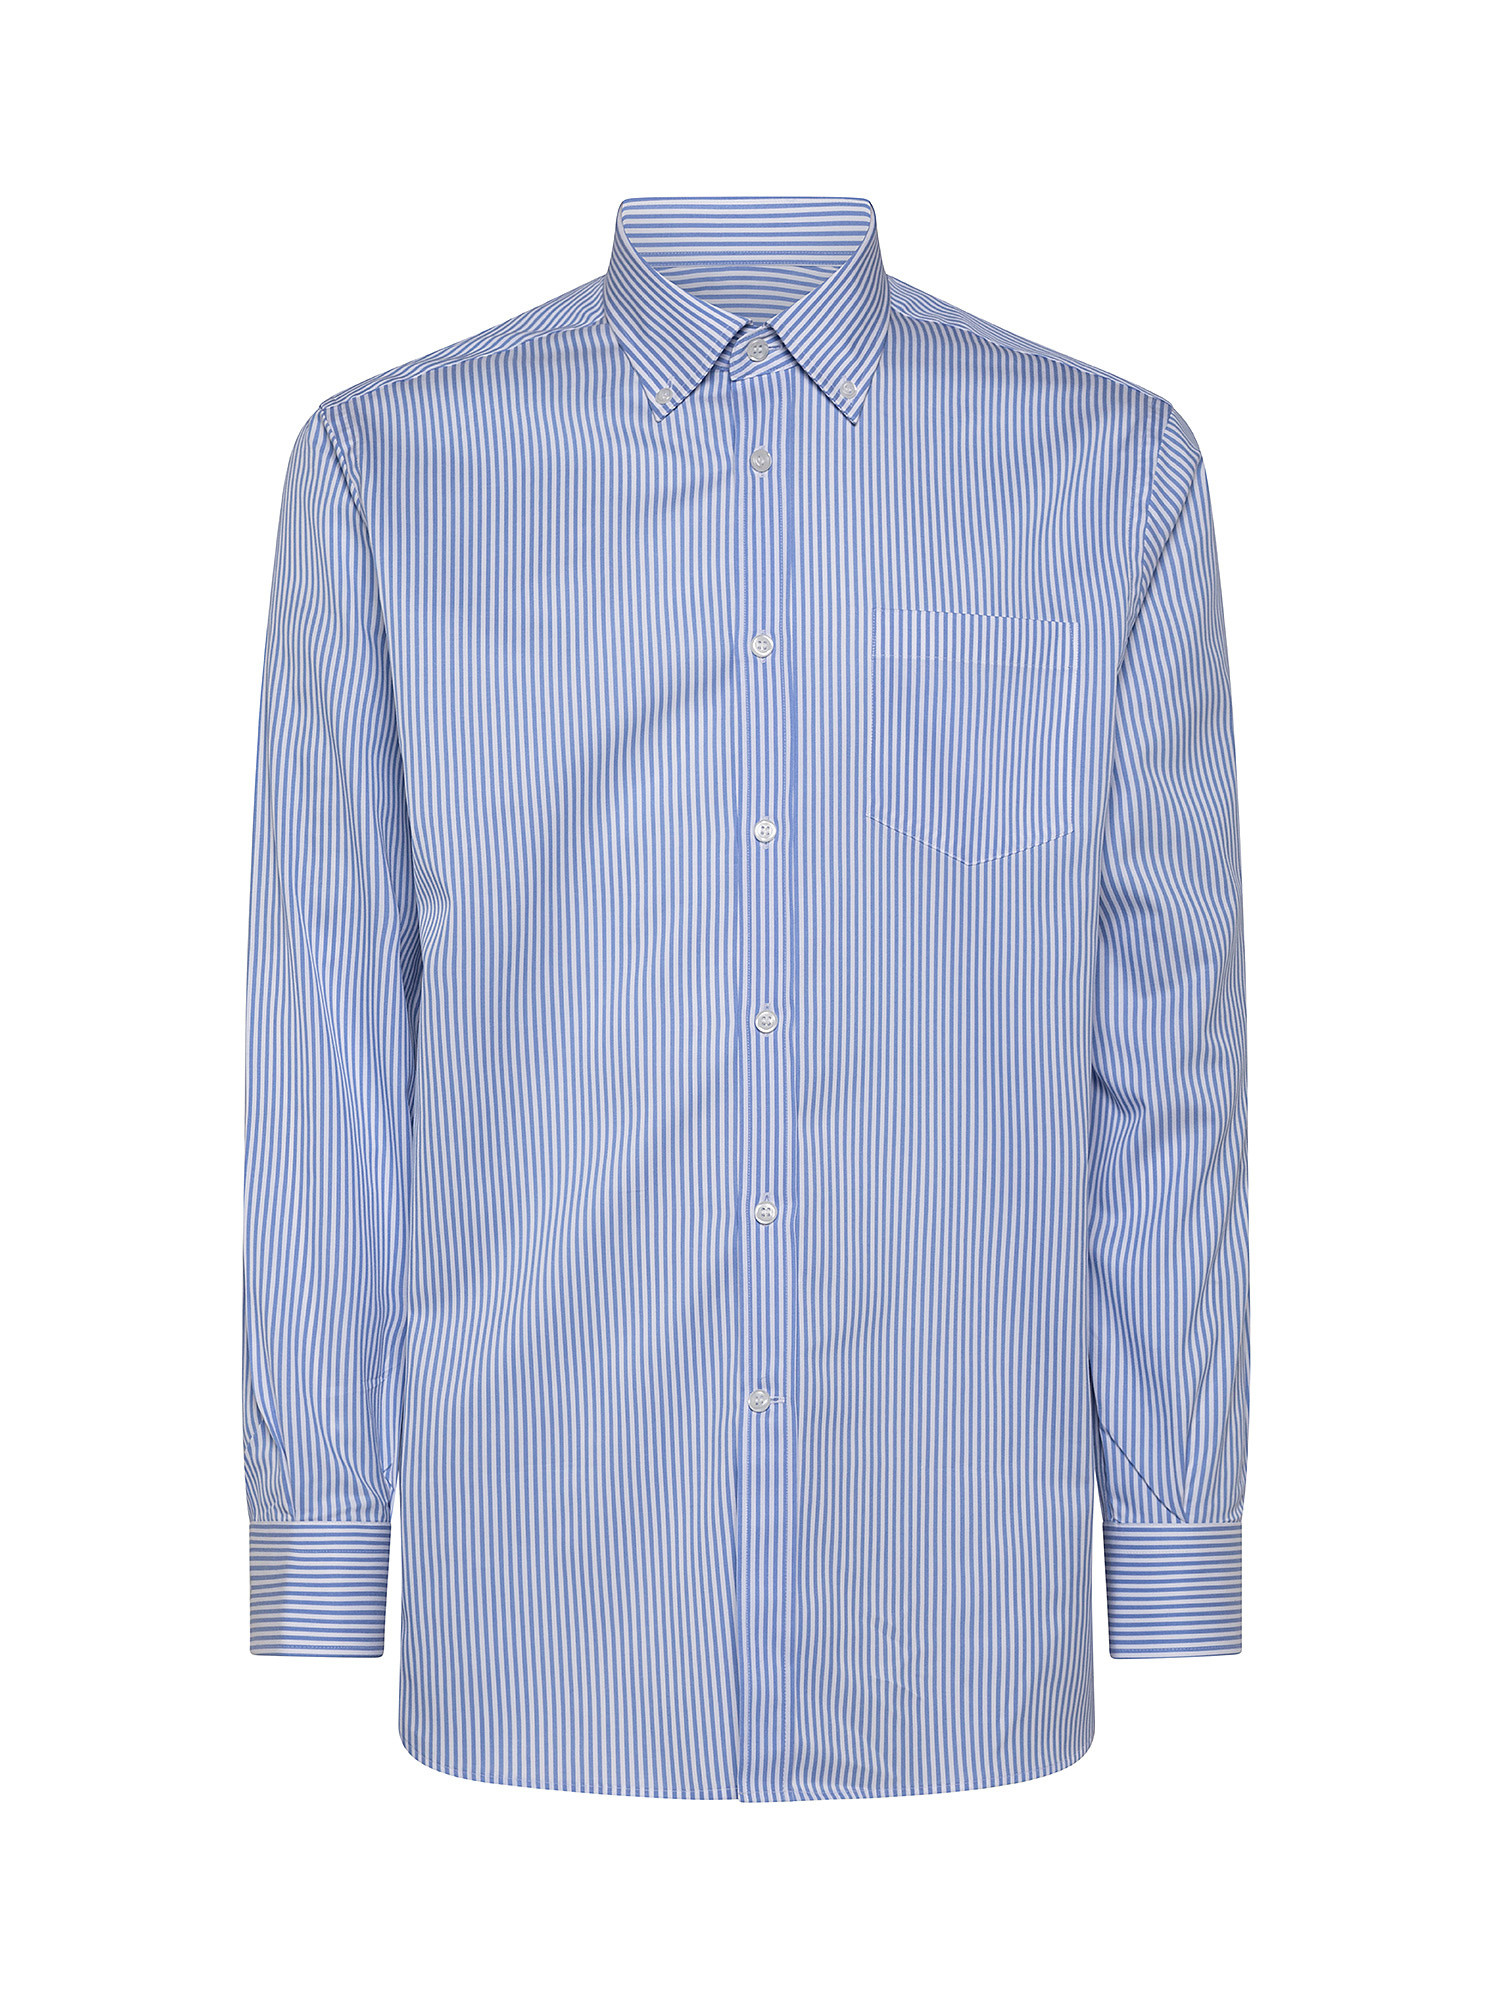 Regular fit cotton poplin shirt, Light Blue, large image number 0